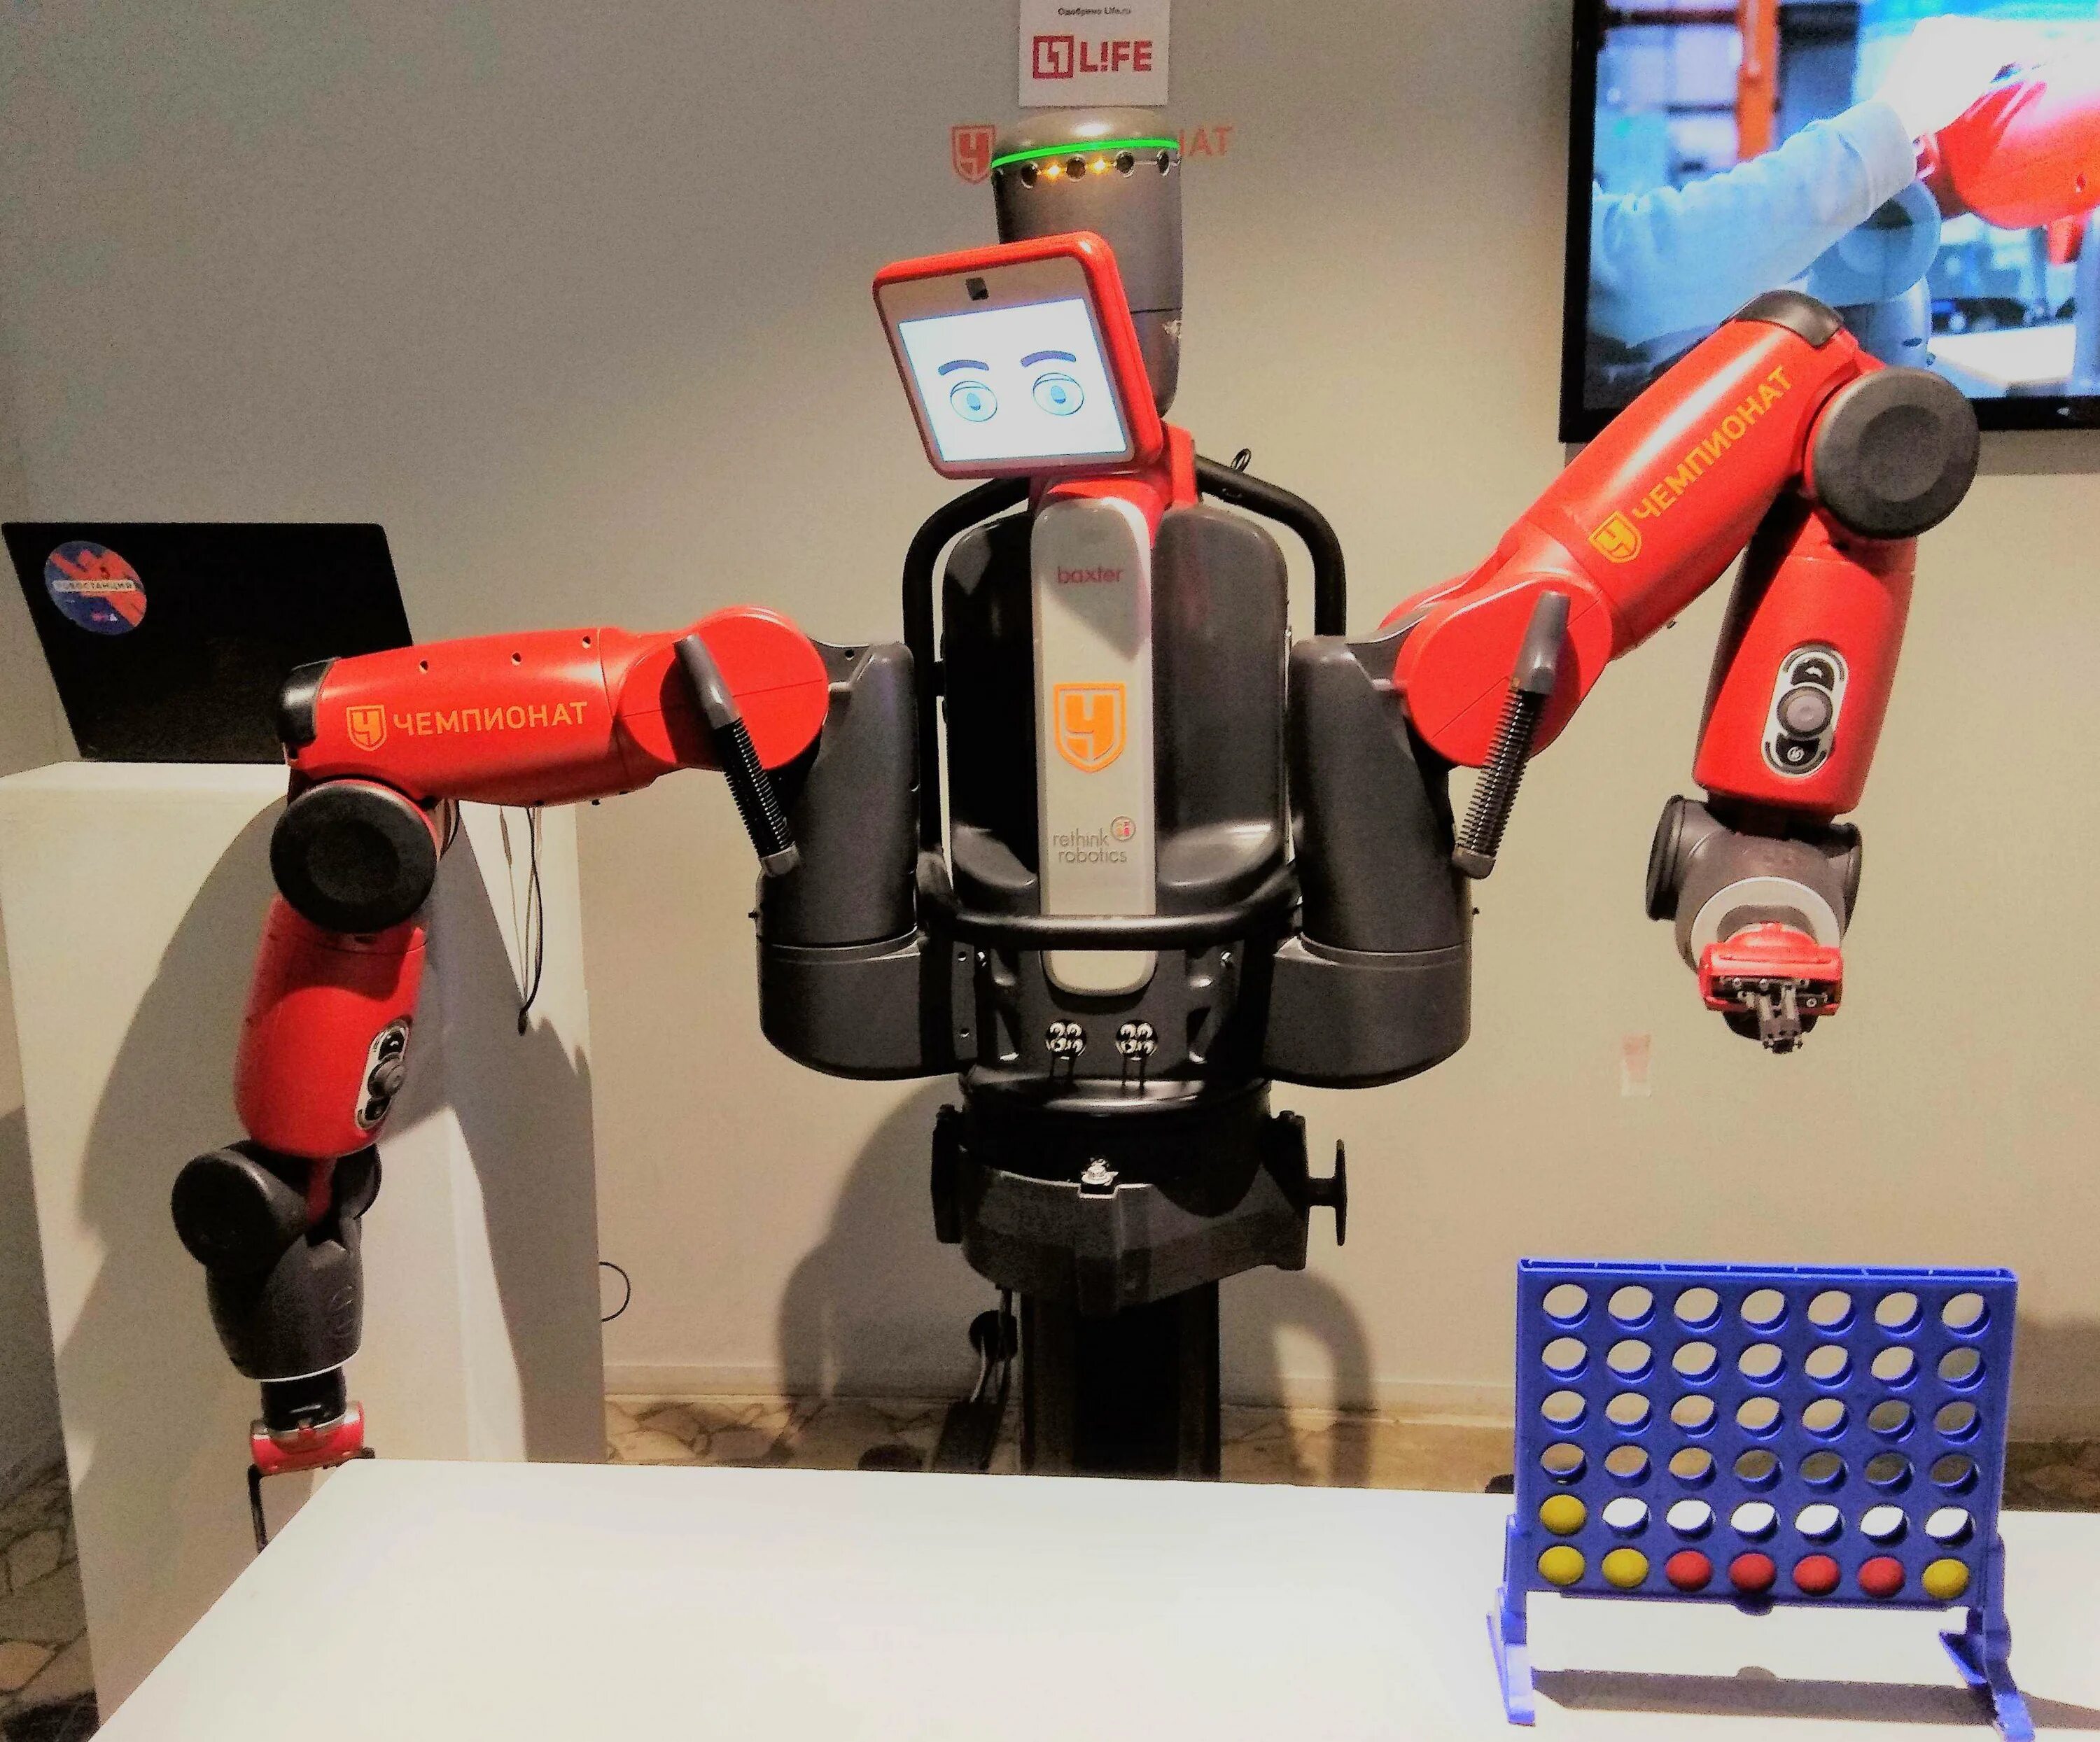 First robot. Промышленный робот Baxter. Первый робот. Самый первый робот. Бакстер коллаборативный робот.